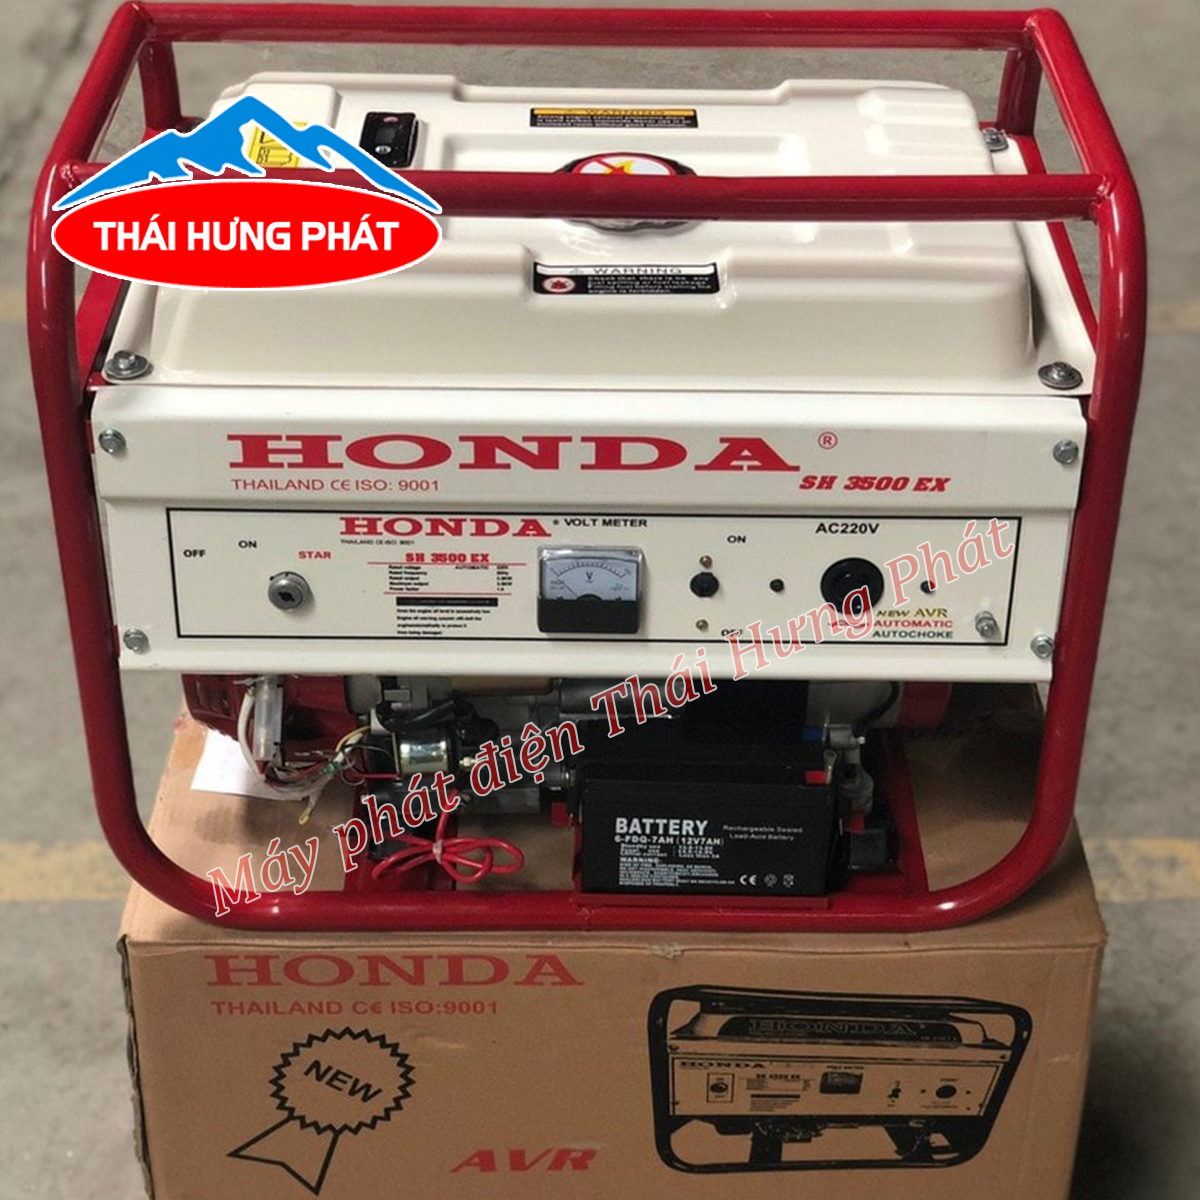 Chống ồn máy phát điện: Cách làm giảm tiếng ồn ở máy phát điện Honda 